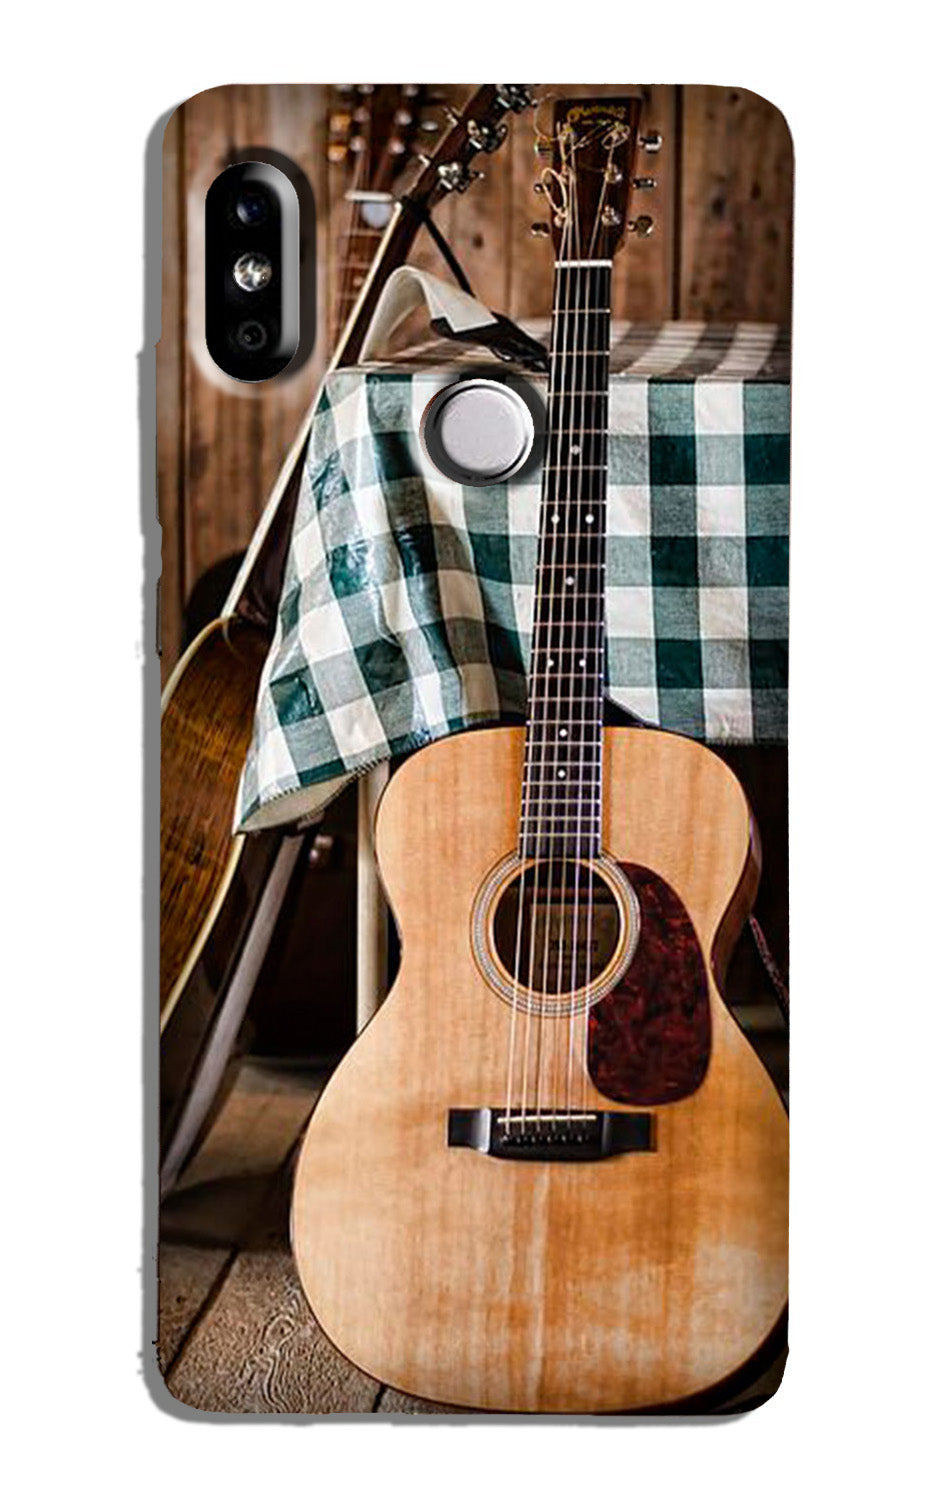 Guitar Case for Redmi 6 Pro